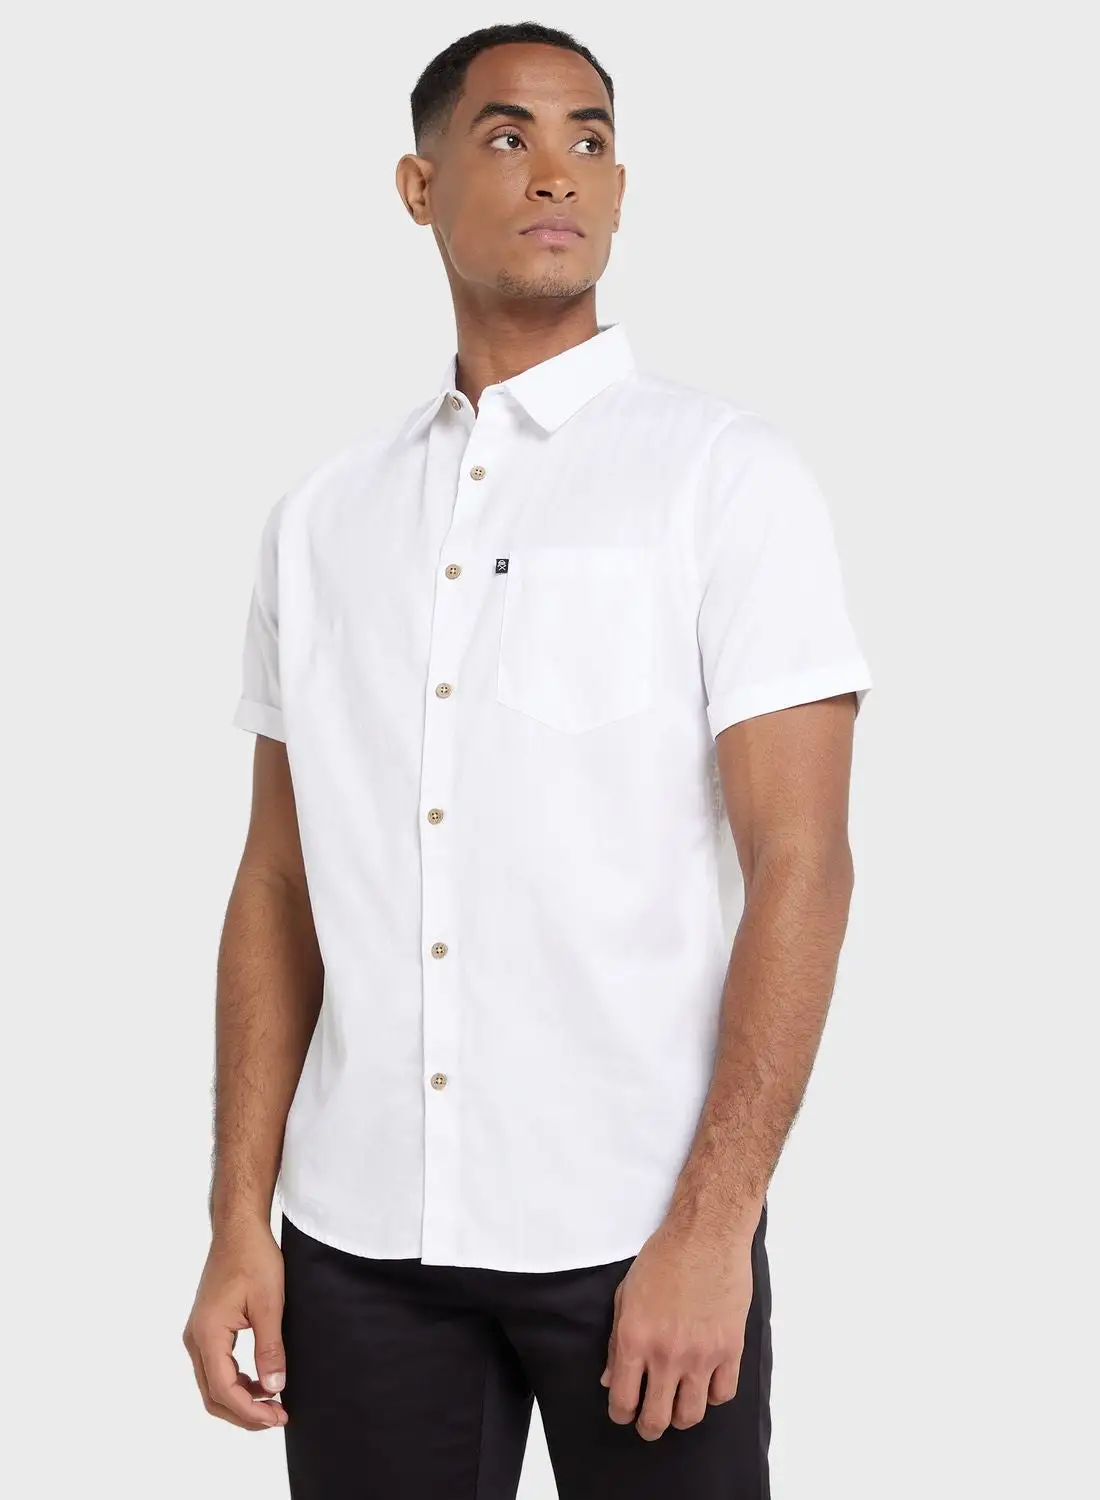 قميص توماس سكوت توماس سكوت للرجال باللون الأبيض ذو قصة ضيقة كاجوال مستدام